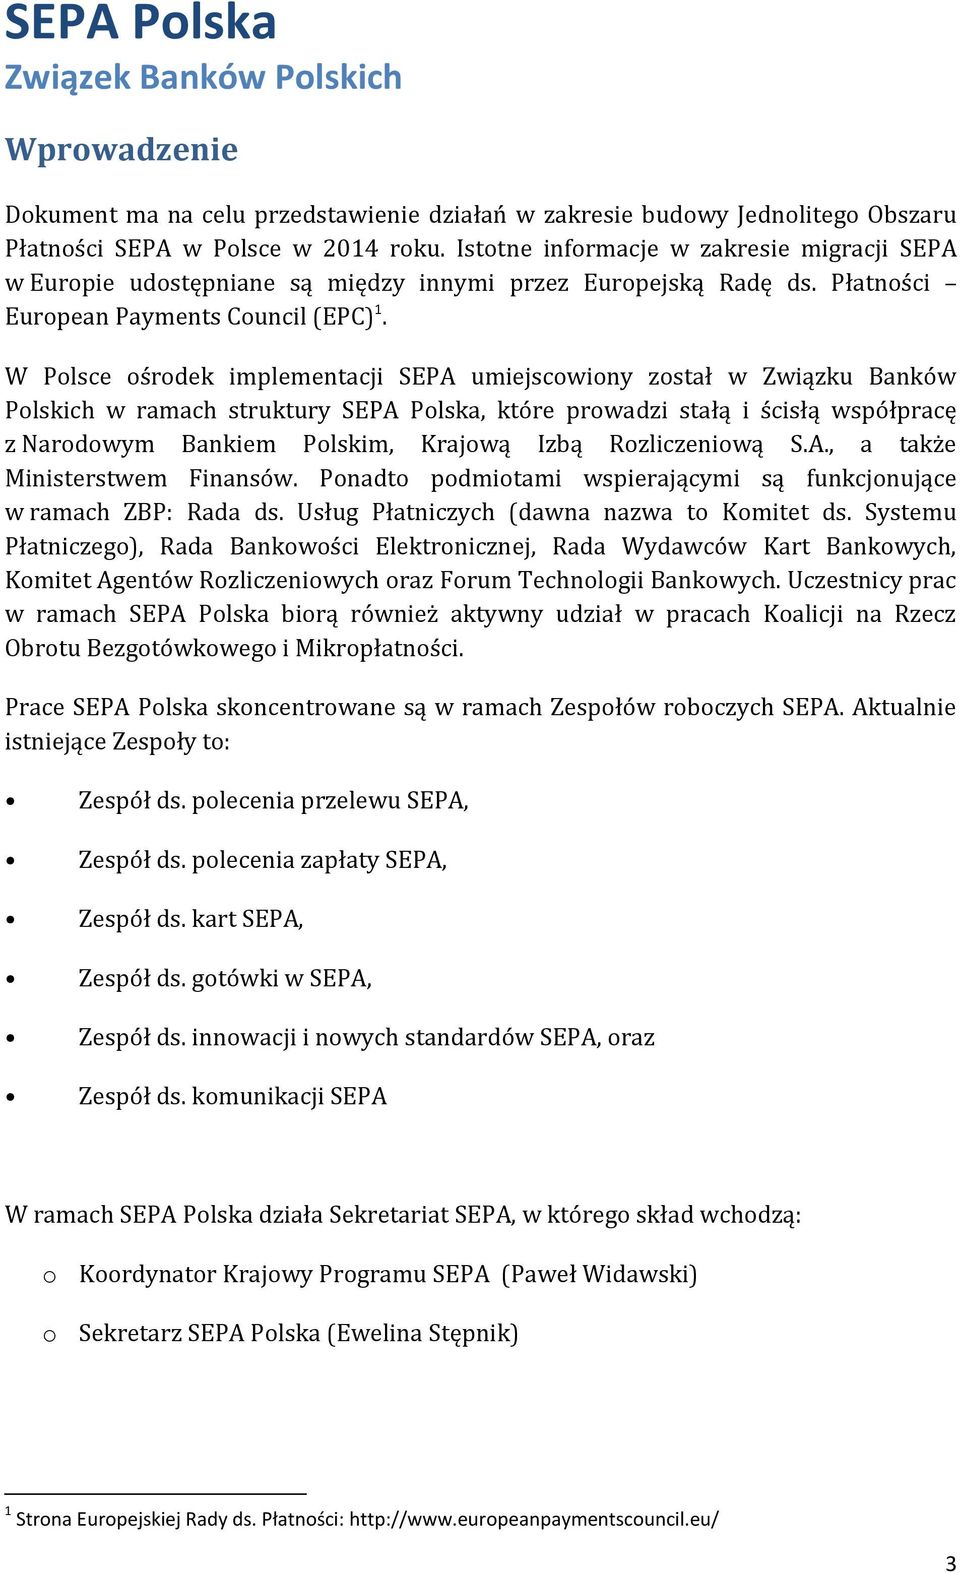 W Polsce ośrodek implementacji SEPA umiejscowiony został w Związku Banków Polskich w ramach struktury SEPA Polska, które prowadzi stałą i ścisłą współpracę z Narodowym Bankiem Polskim, Krajową Izbą